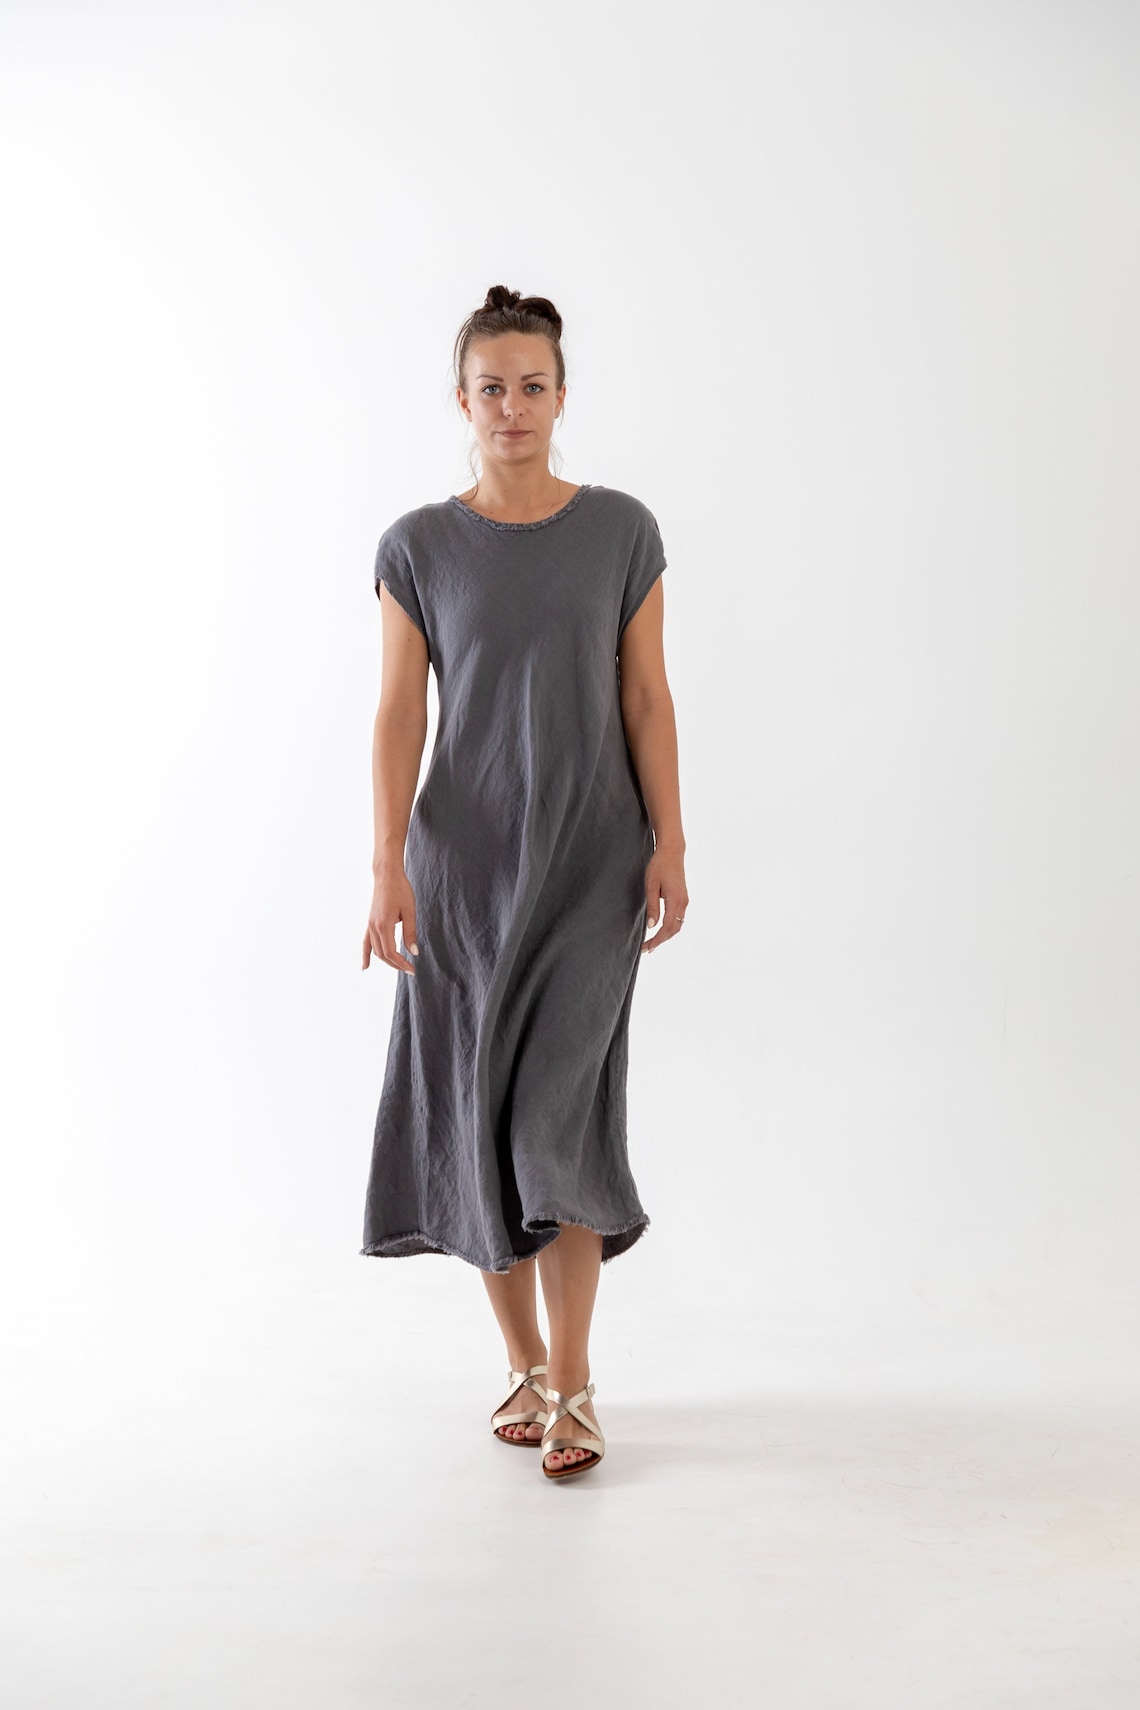 Linen Dress ANNA Ankle Length. Summer Linen Dress. Linen - Etsy